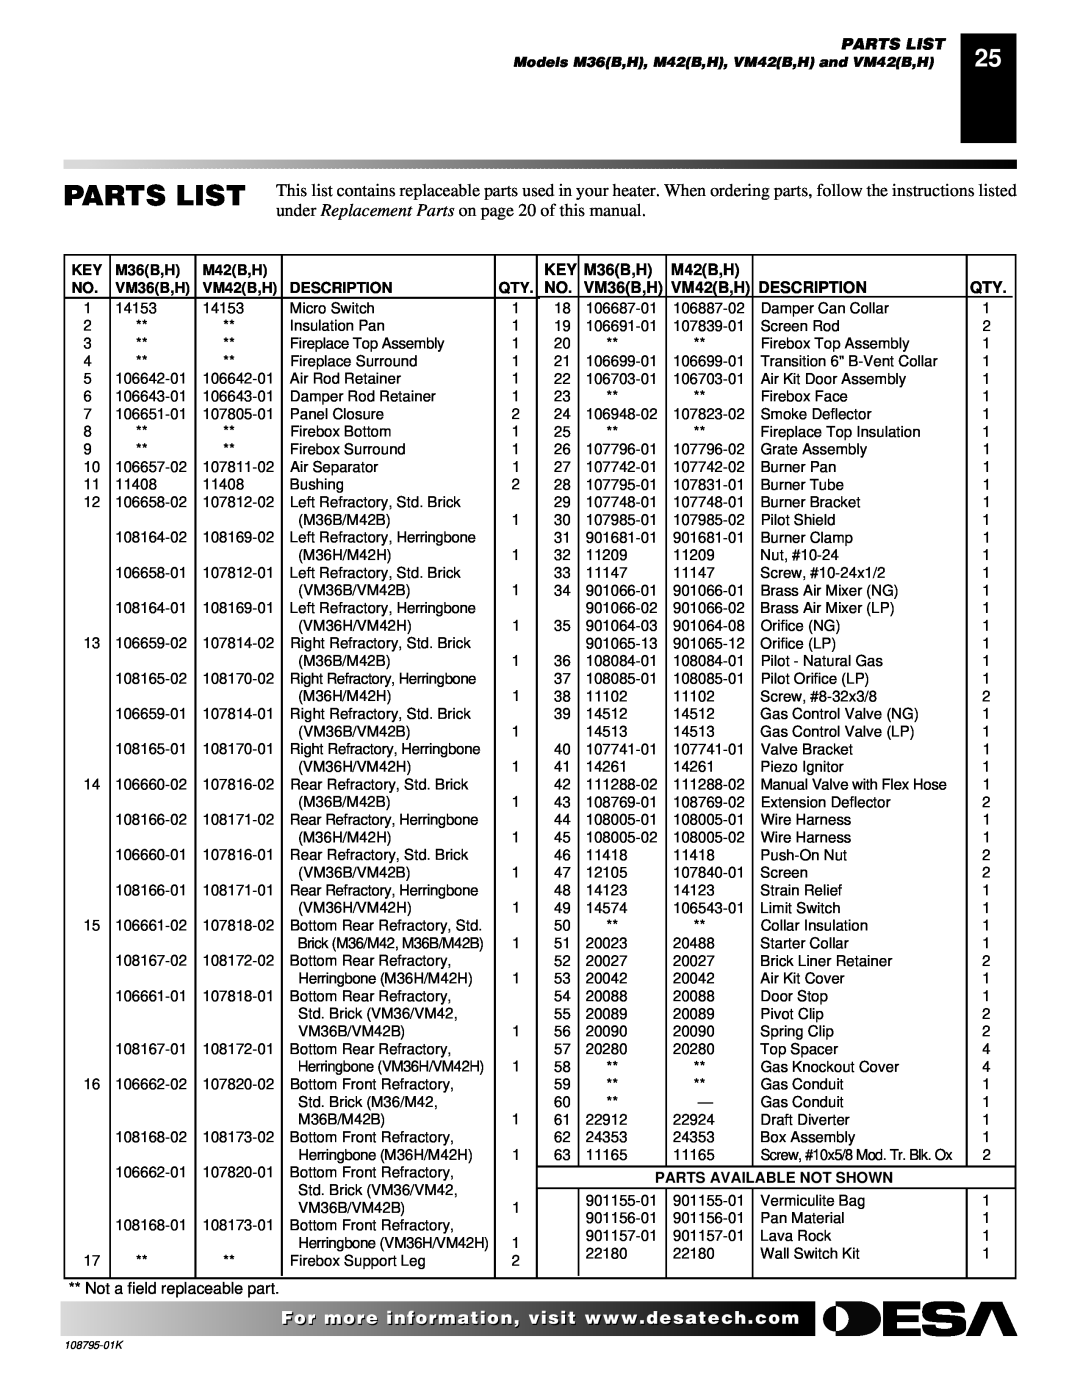 Desa AND VM42 installation manual Parts List, VM36B,H, Description, Models M36B,H, M42B,H, VM42B,H and VM42B,H 